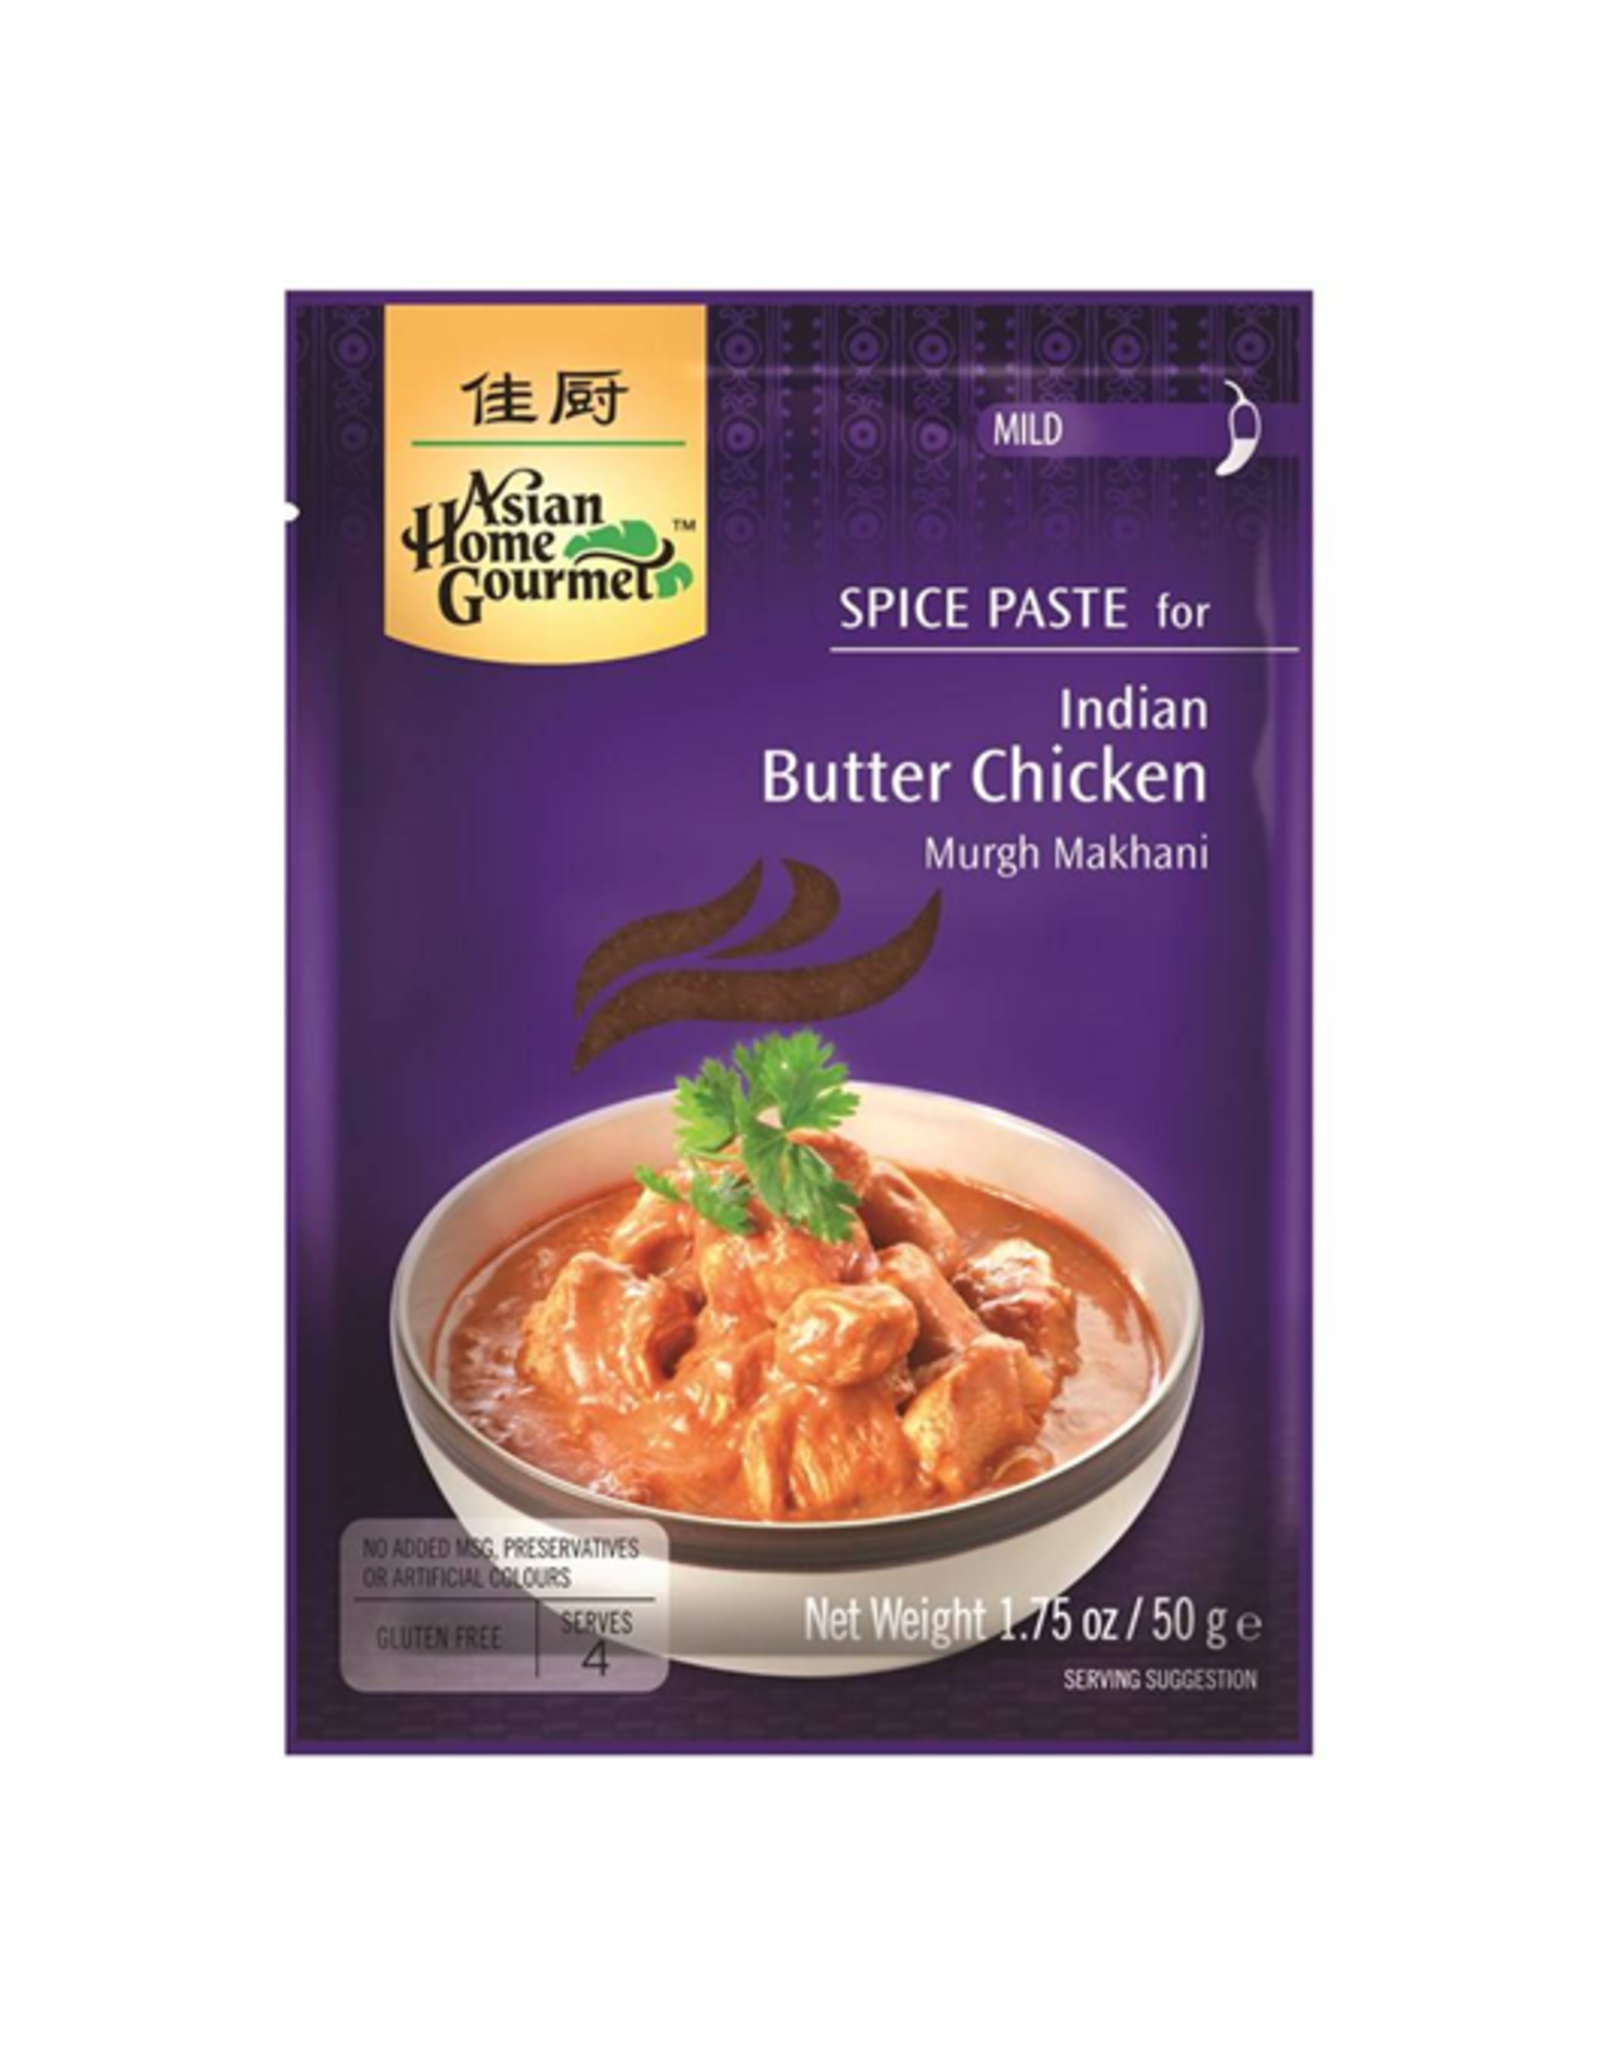 Asian Home Gourmet Indian Butter Chicken